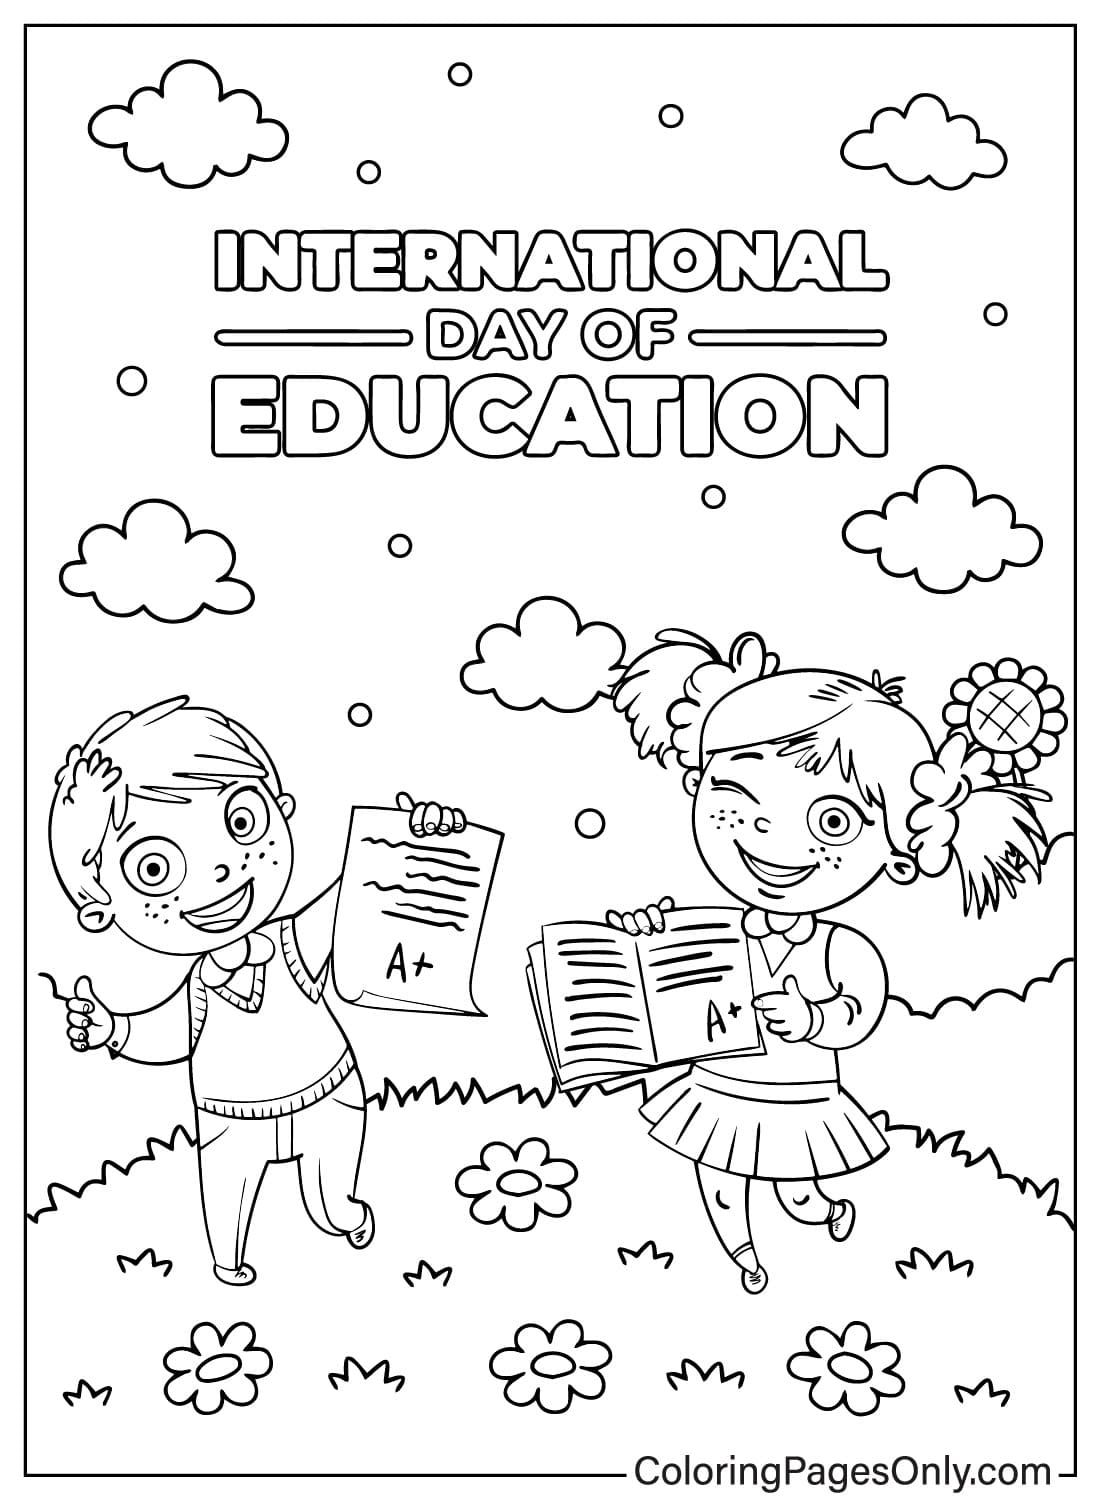 国际教育日着色页可从国际教育日下载